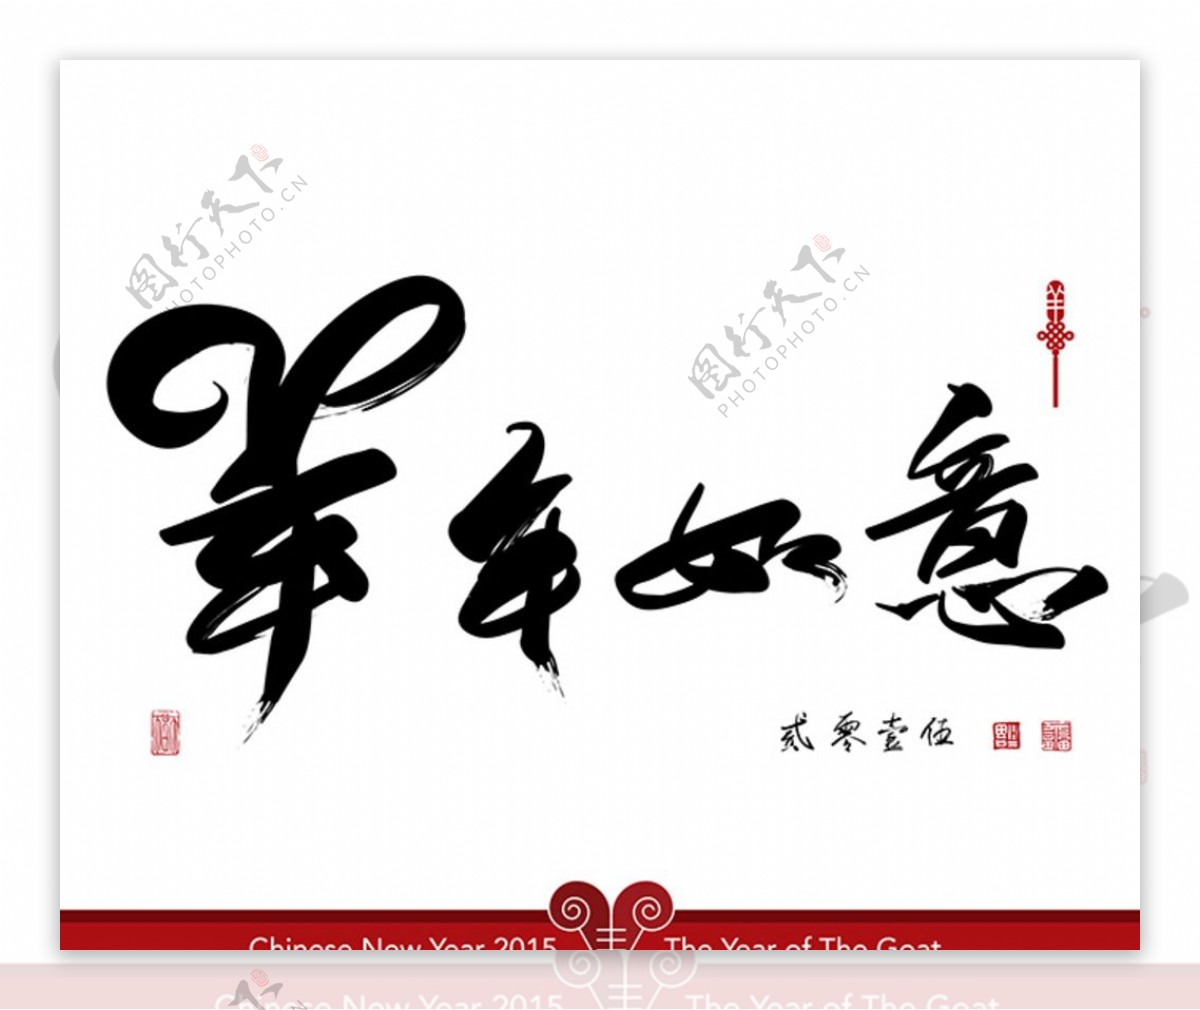 中国风羊年字体素材图片